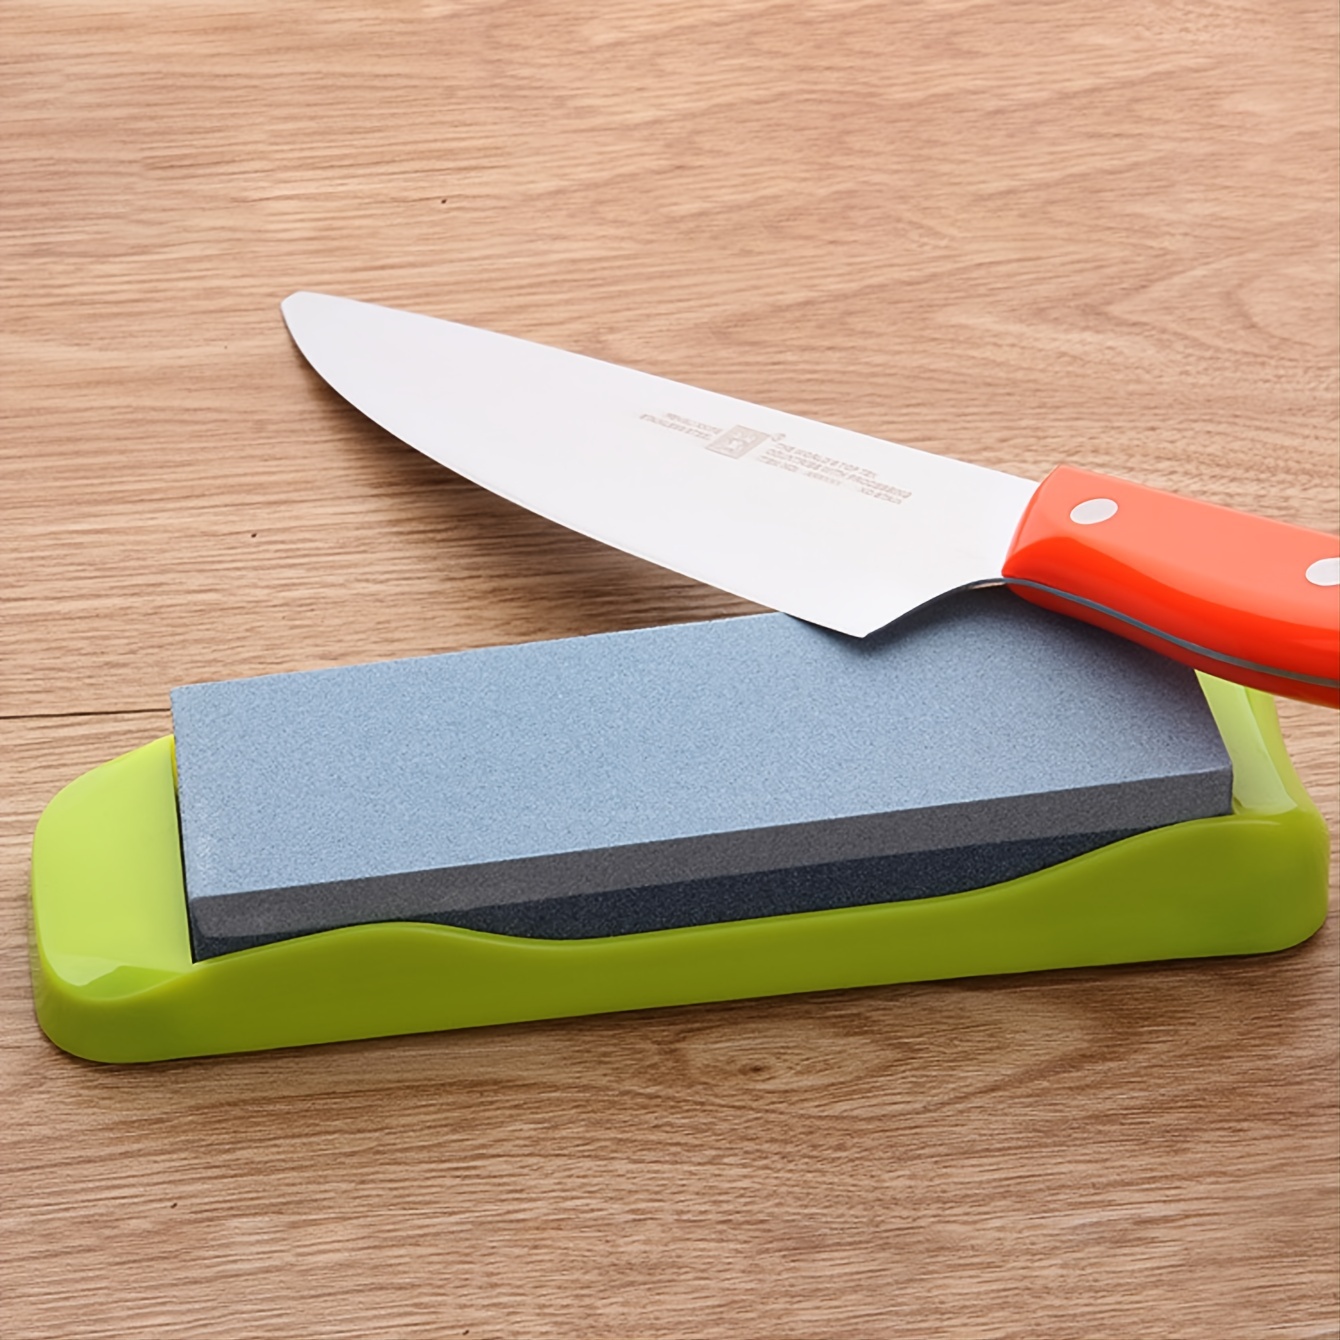 Grindstone - Knife & Tool Sharpening